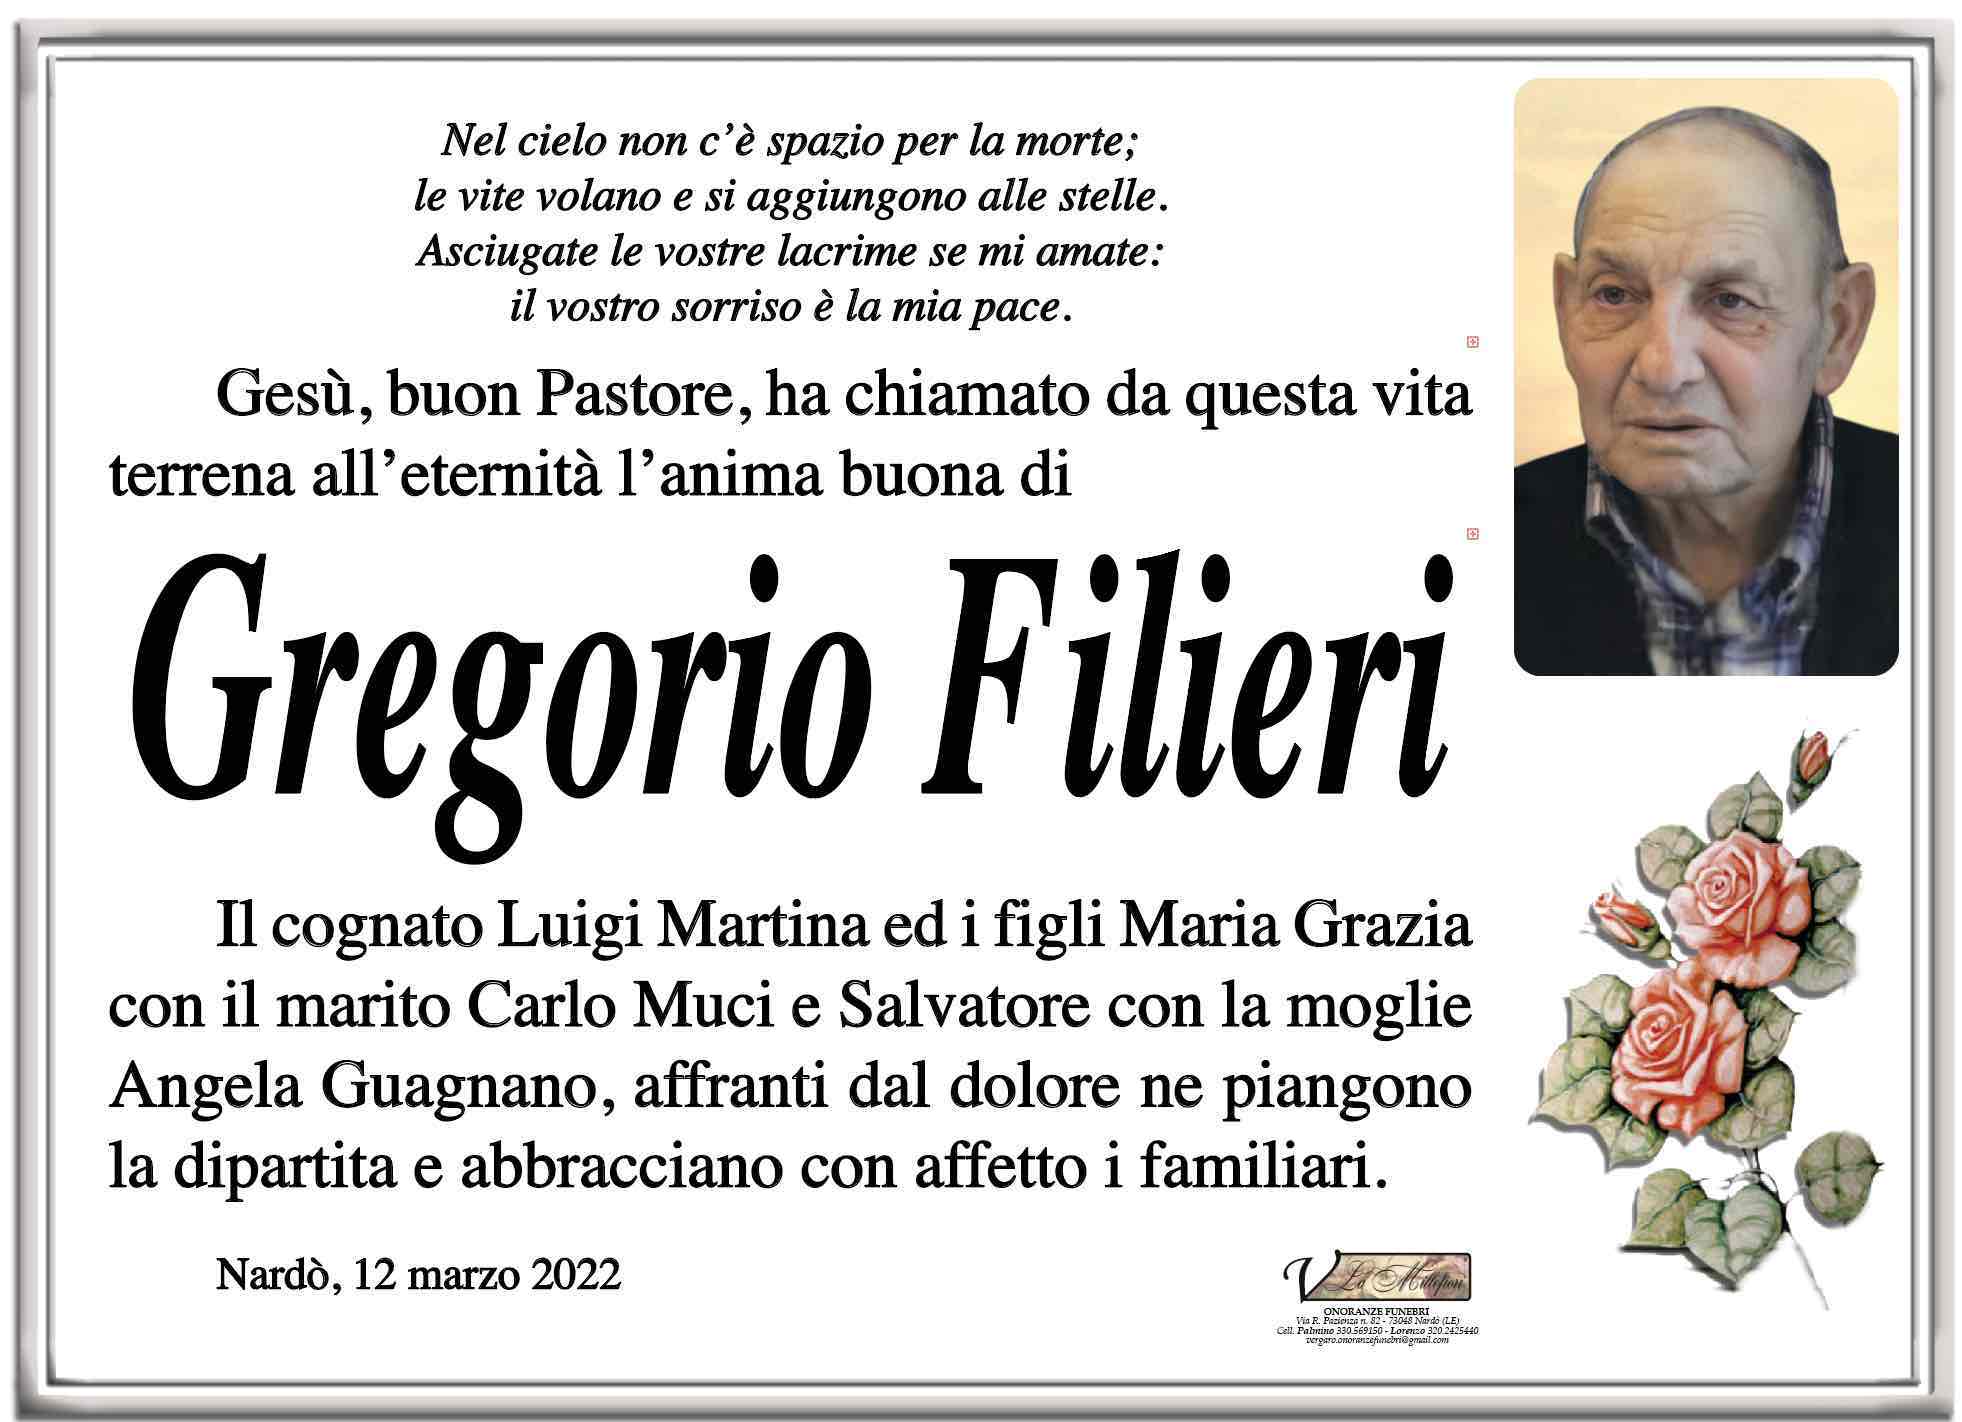 Gregorio Filieri